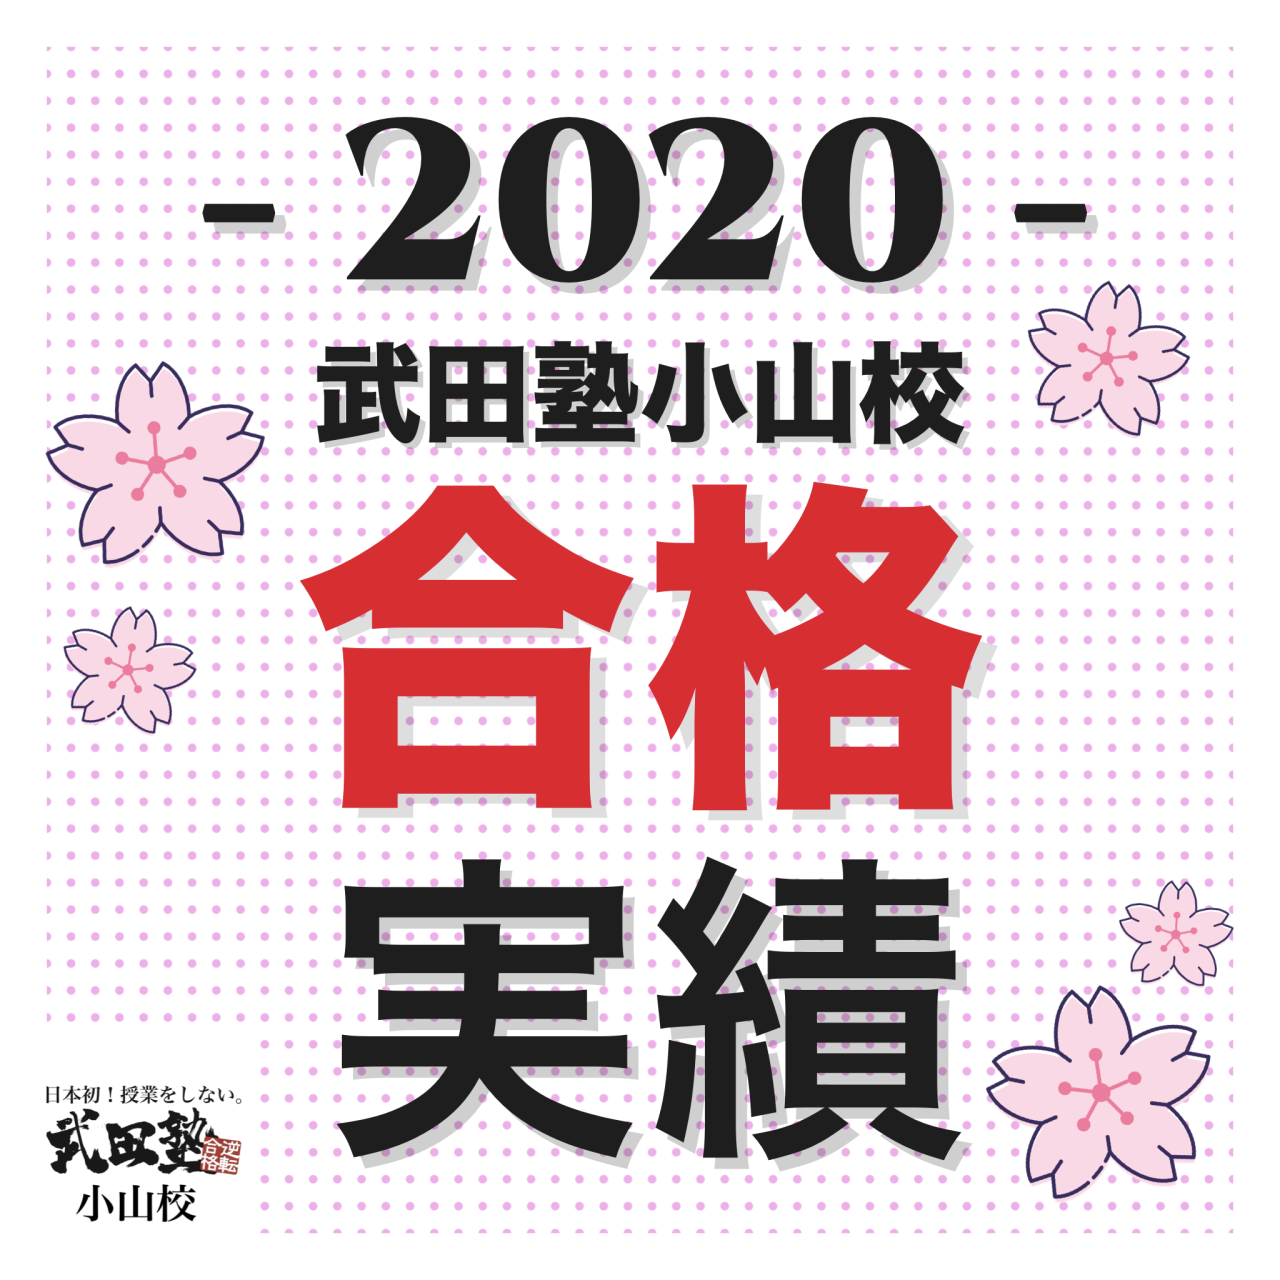 【㊗️合格実績 2020】 武田塾小山校「継続は力なり」